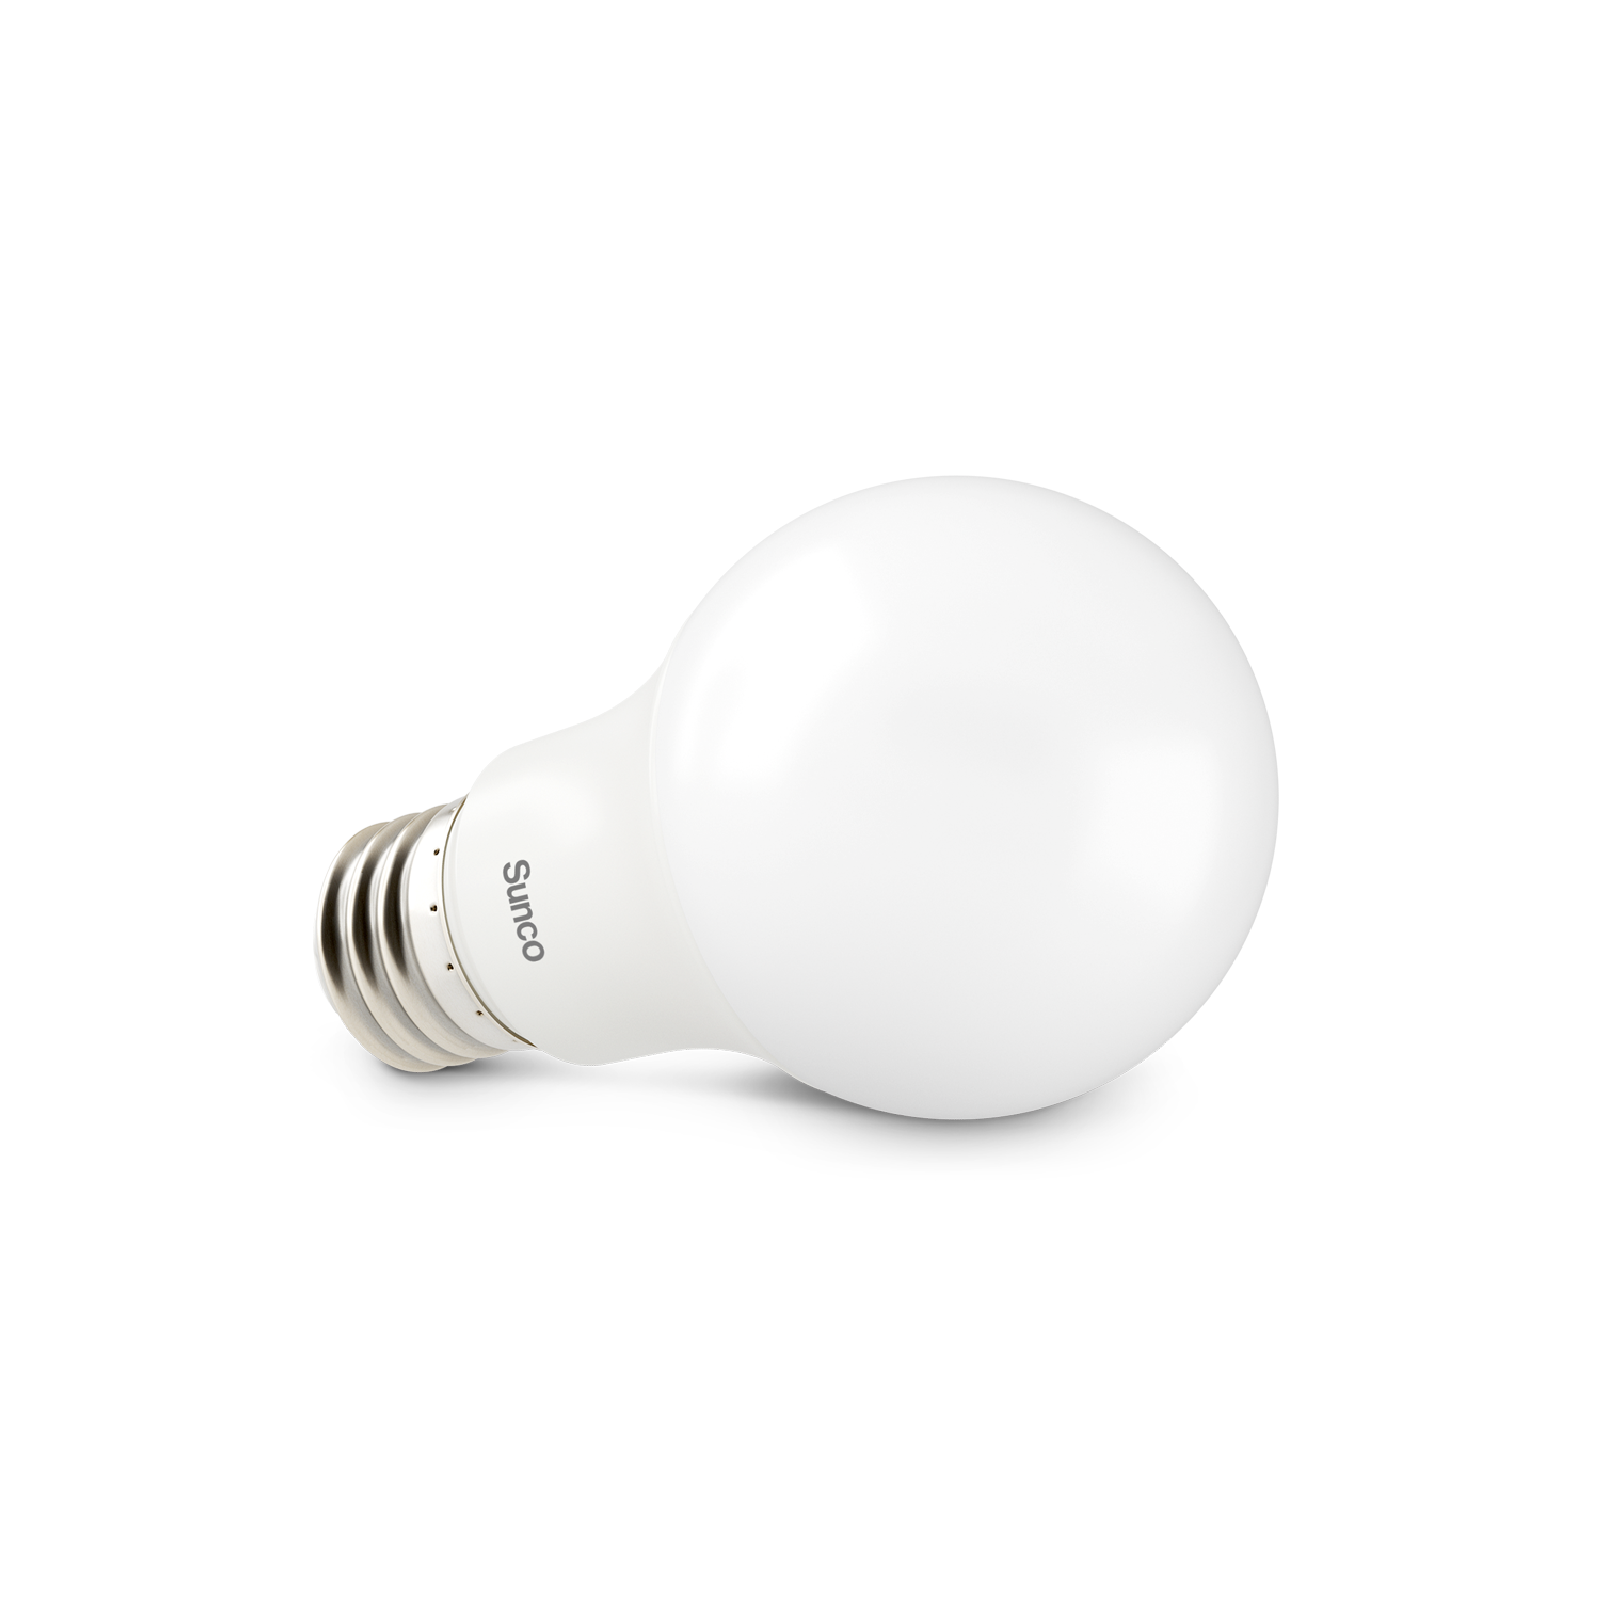 led bulb png